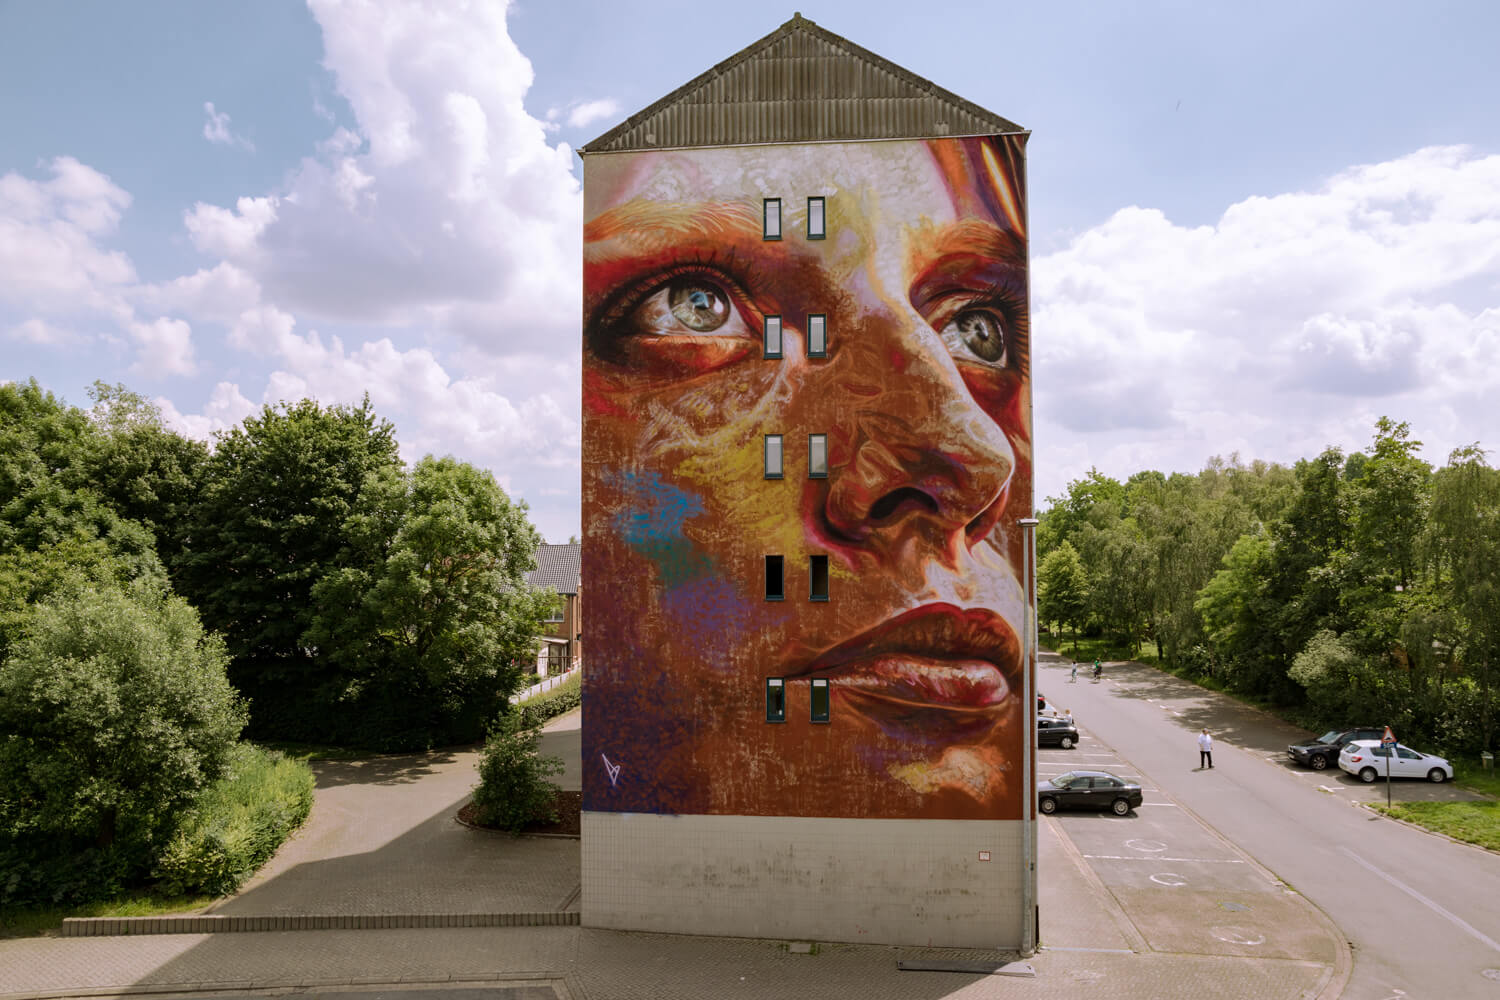 kaleidoscope street art festival by david walker